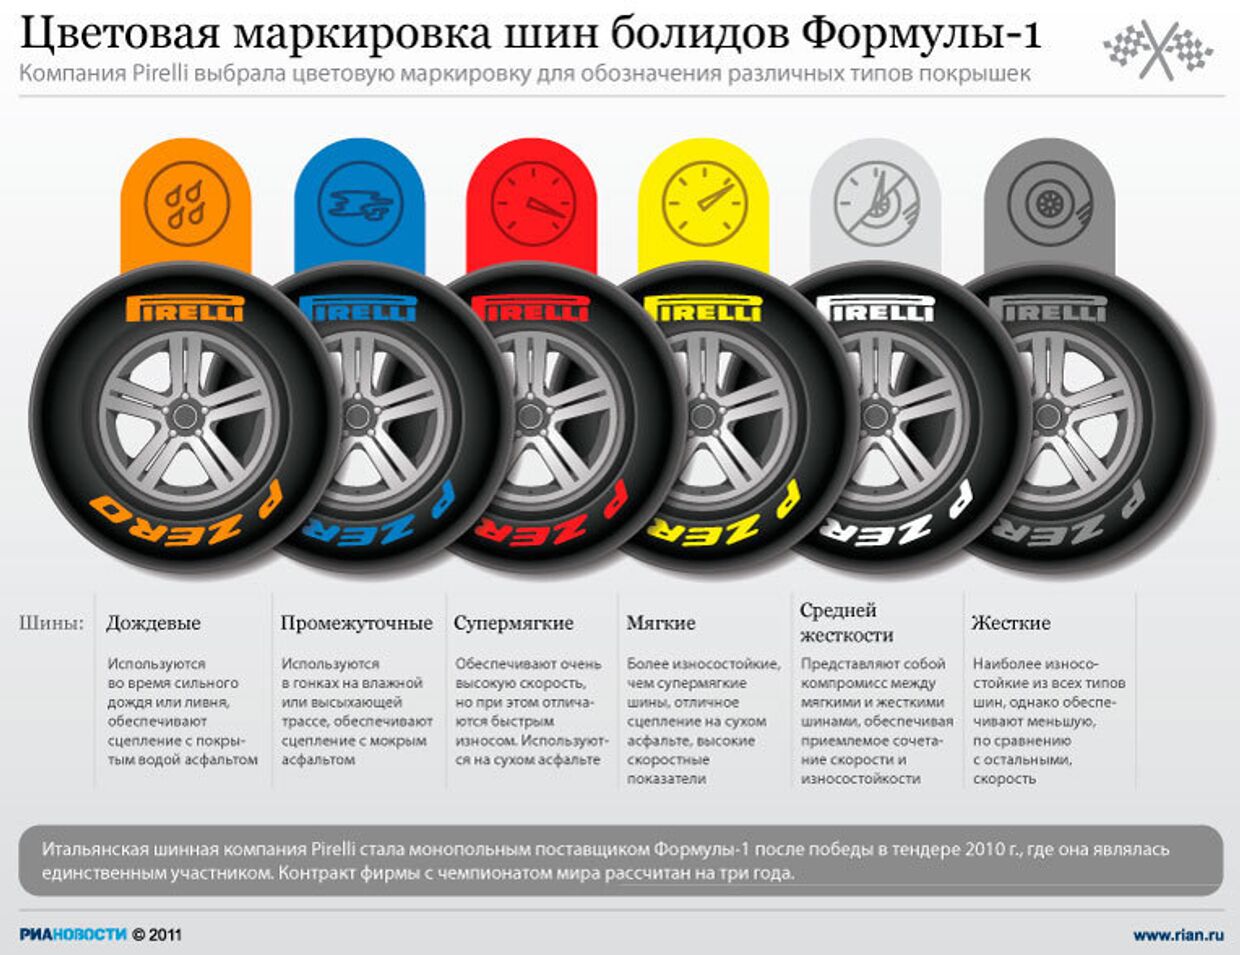 Цветовая маркировка шин болидов Формулы-1